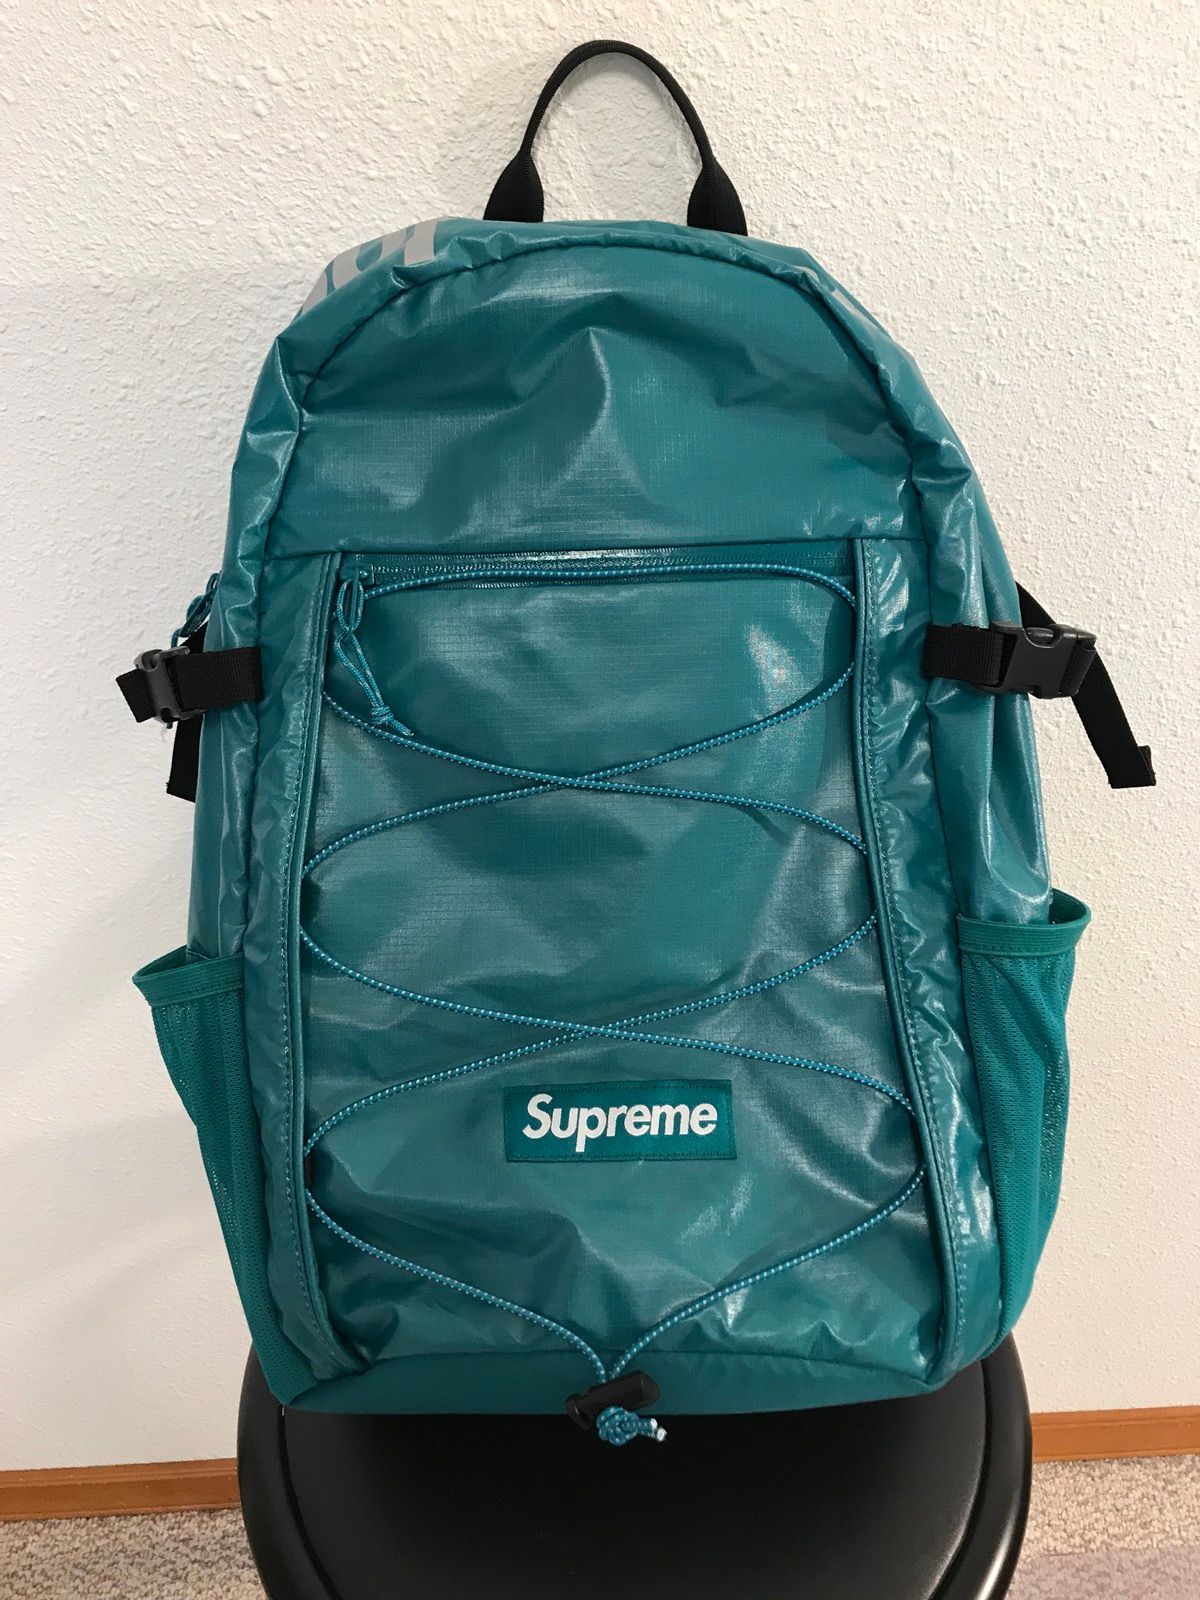 Supreme Green Supreme Backpack F/W 2017 PRISTINE 10/10 Condition